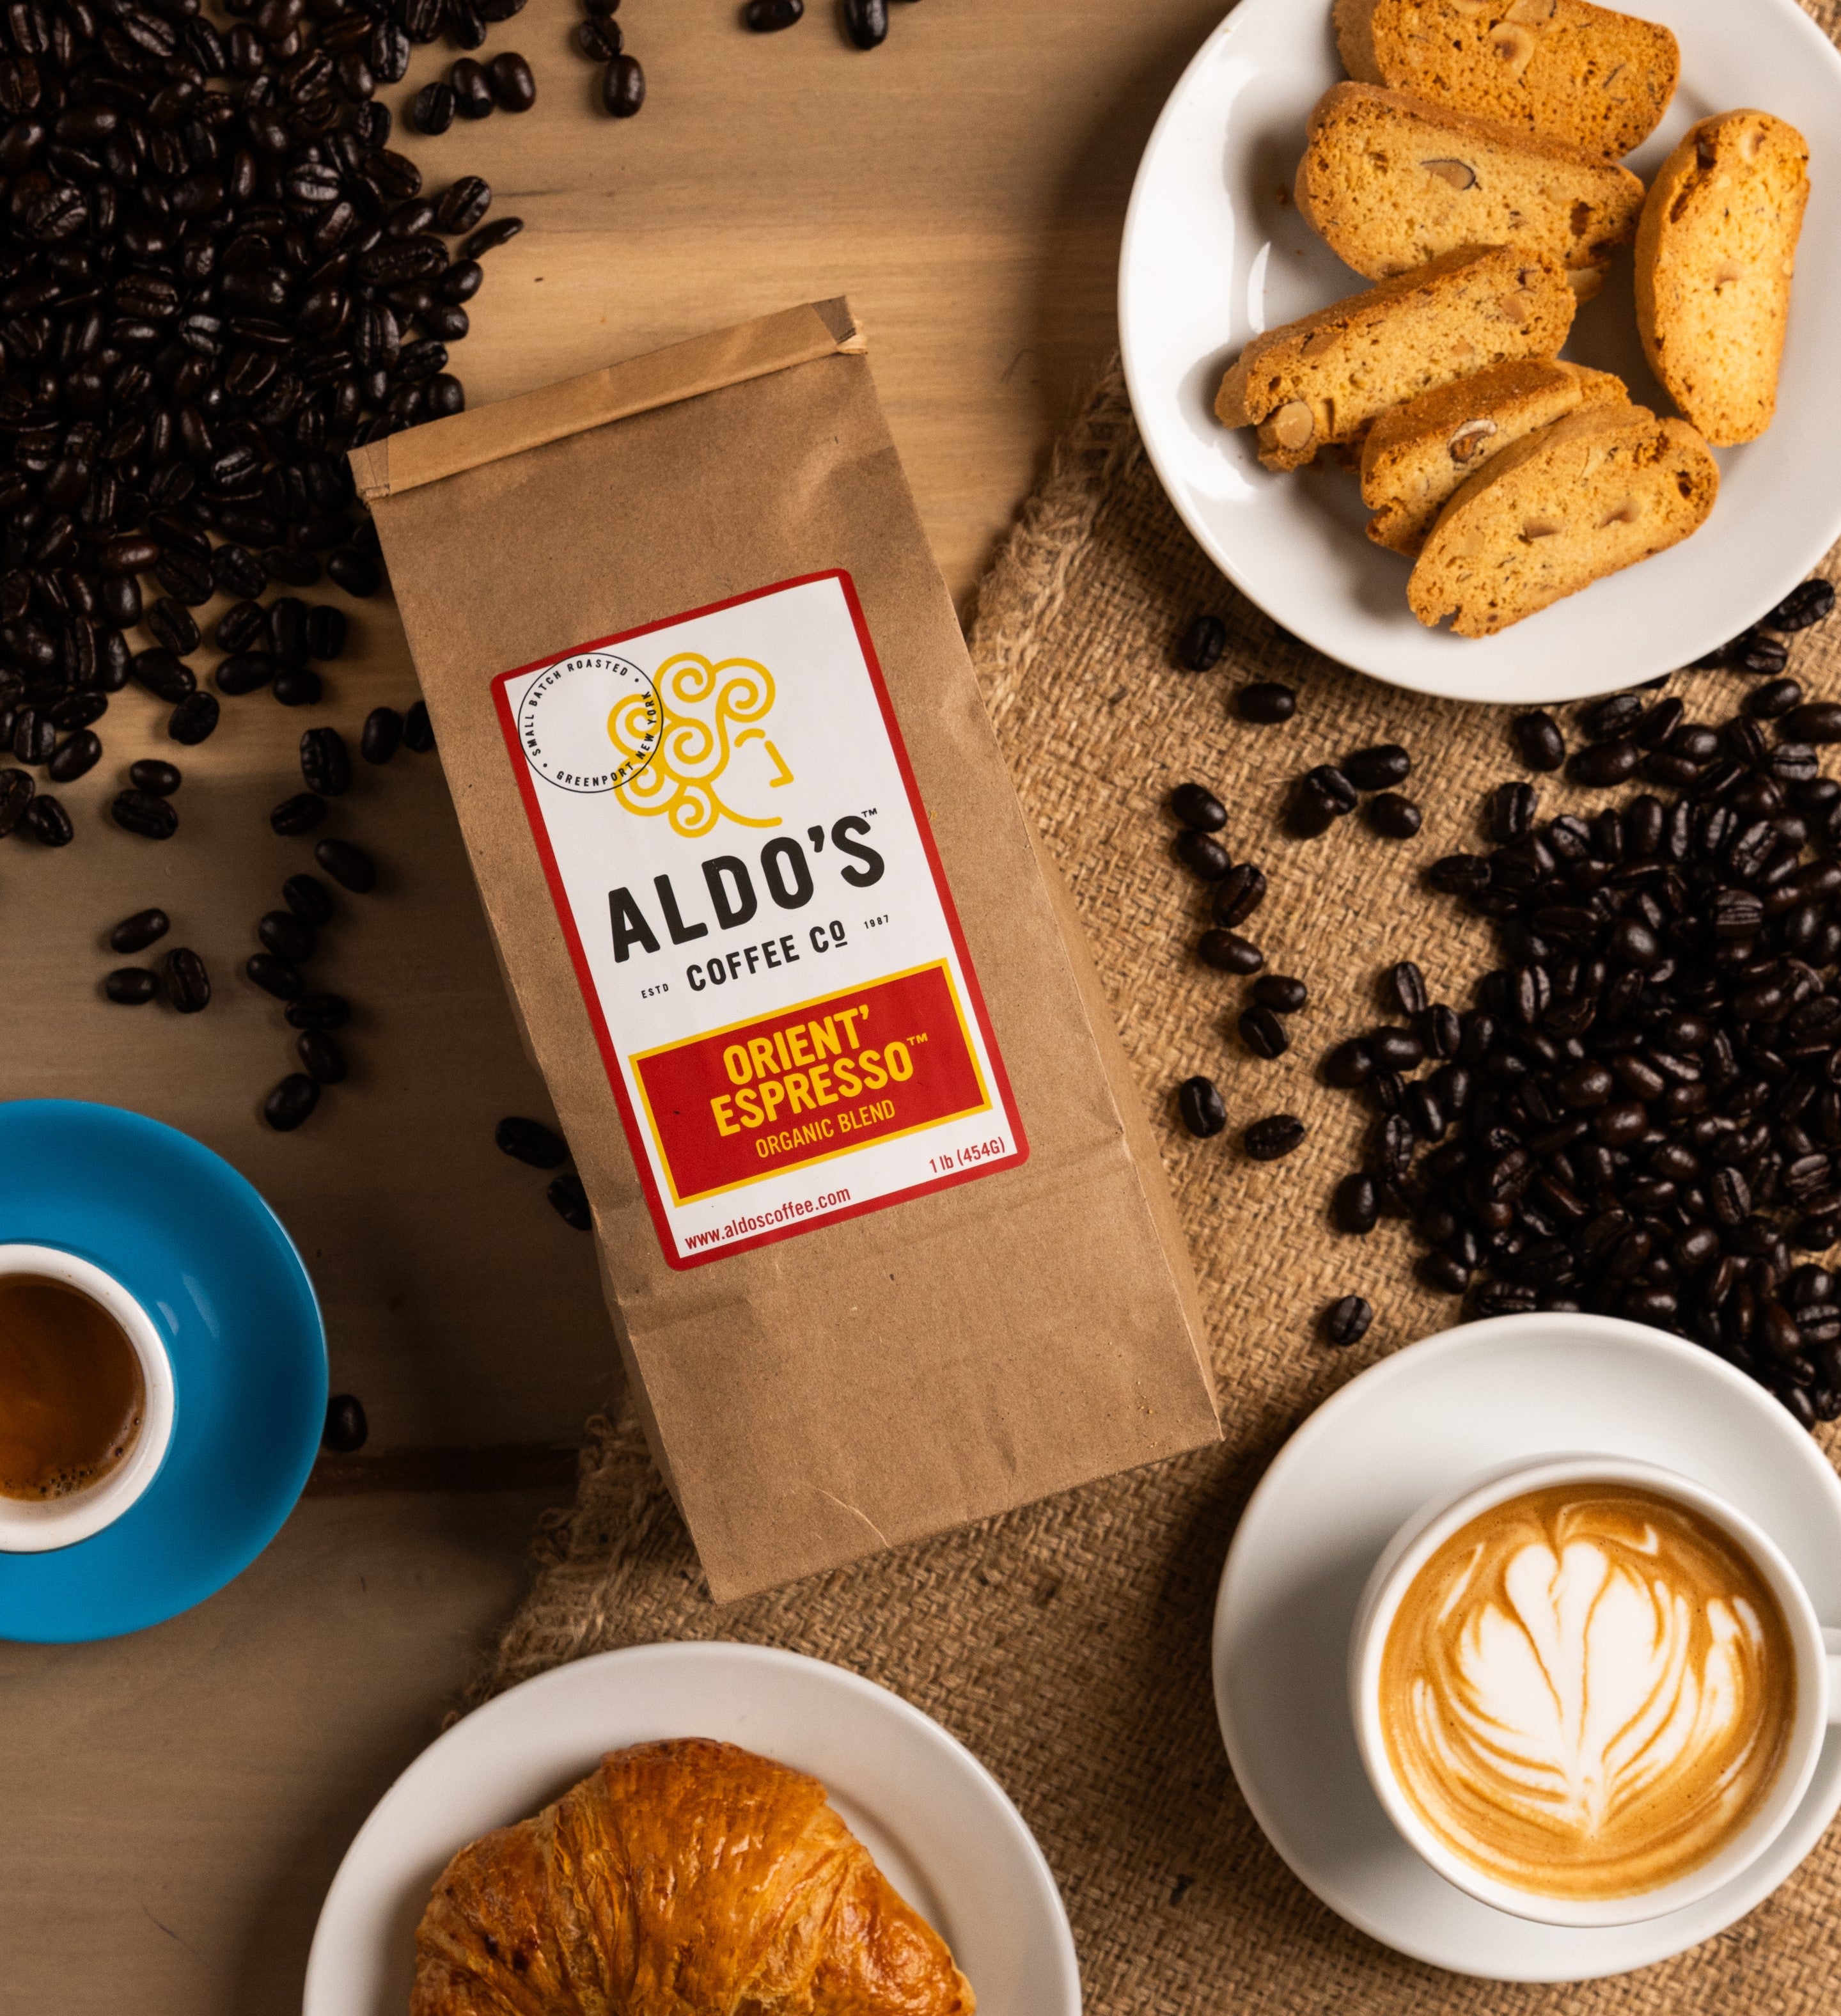 Coffee Samples 5 Pack Coffee Gift Set Las Americas. Gourmet Organic Me –  Split Oak Coffee Roasters